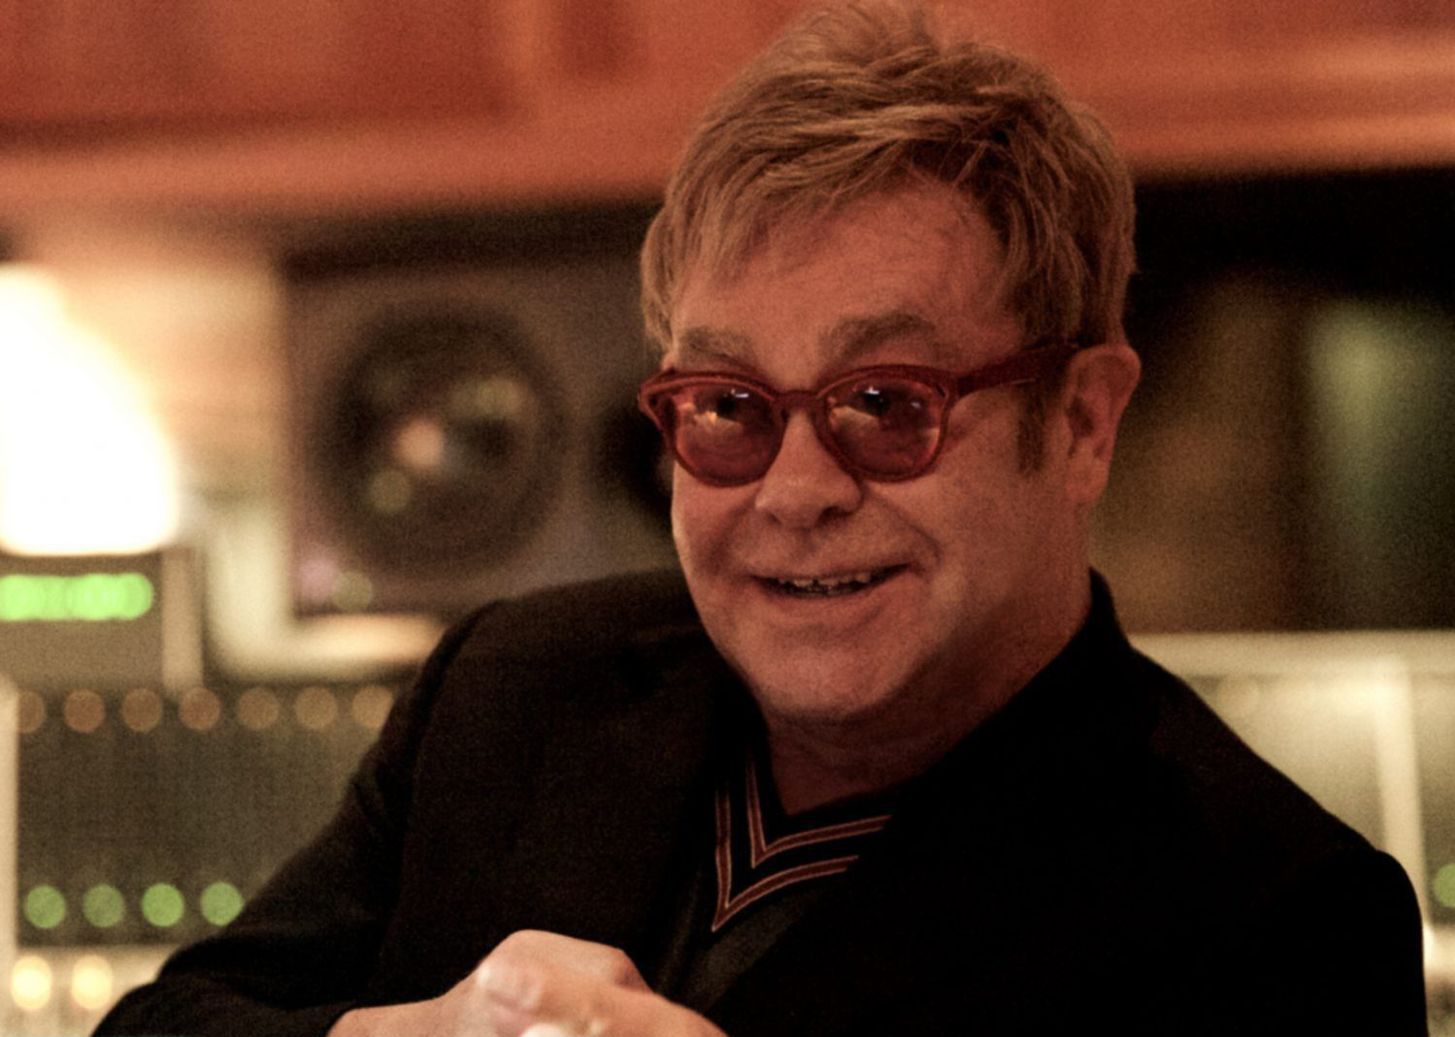 Pressefoto von 2015 von Elton John.